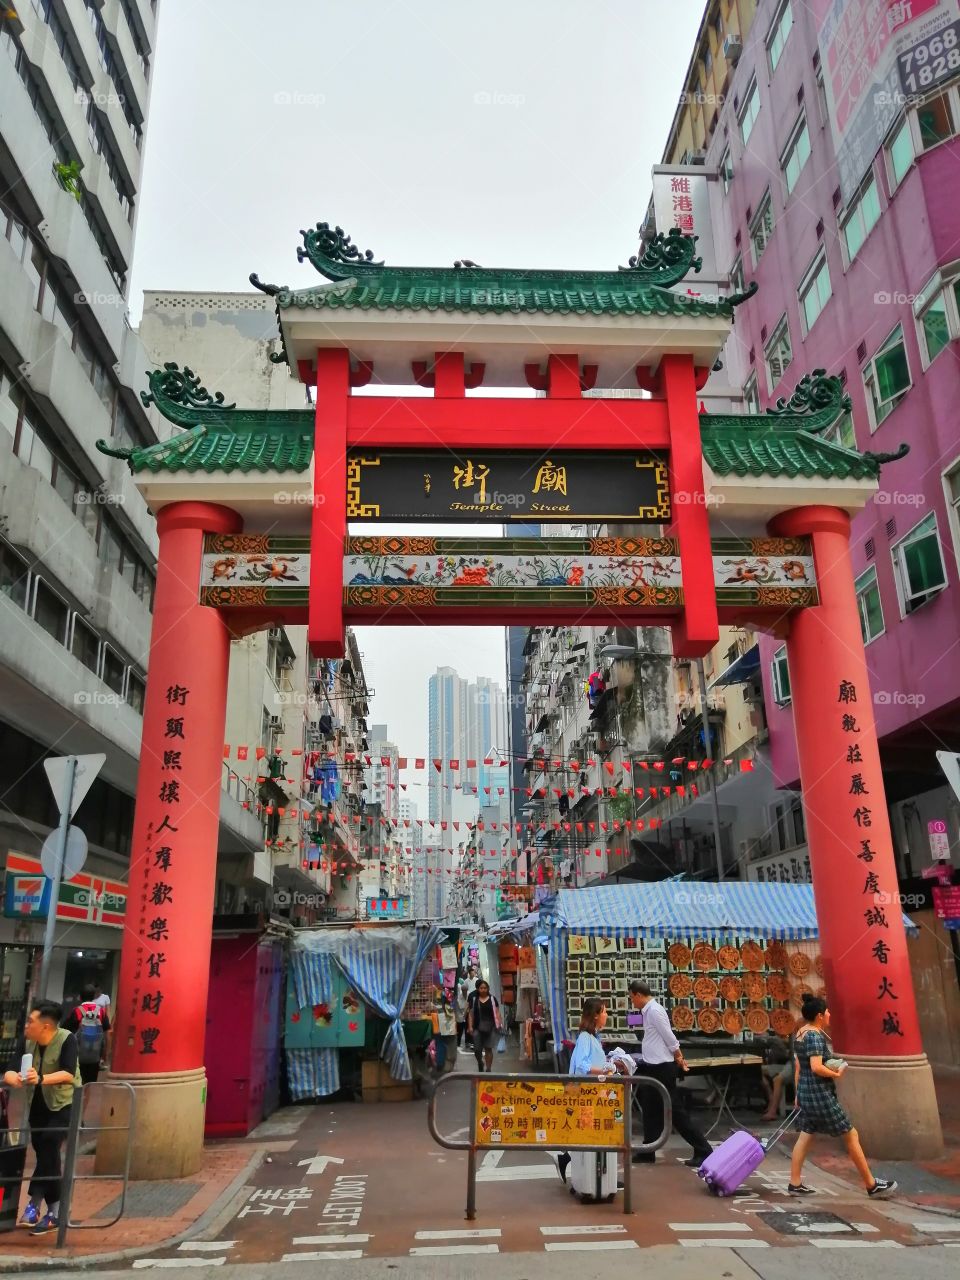 The gate to the Temple Street, Yau Ma Tei, Hong Kong